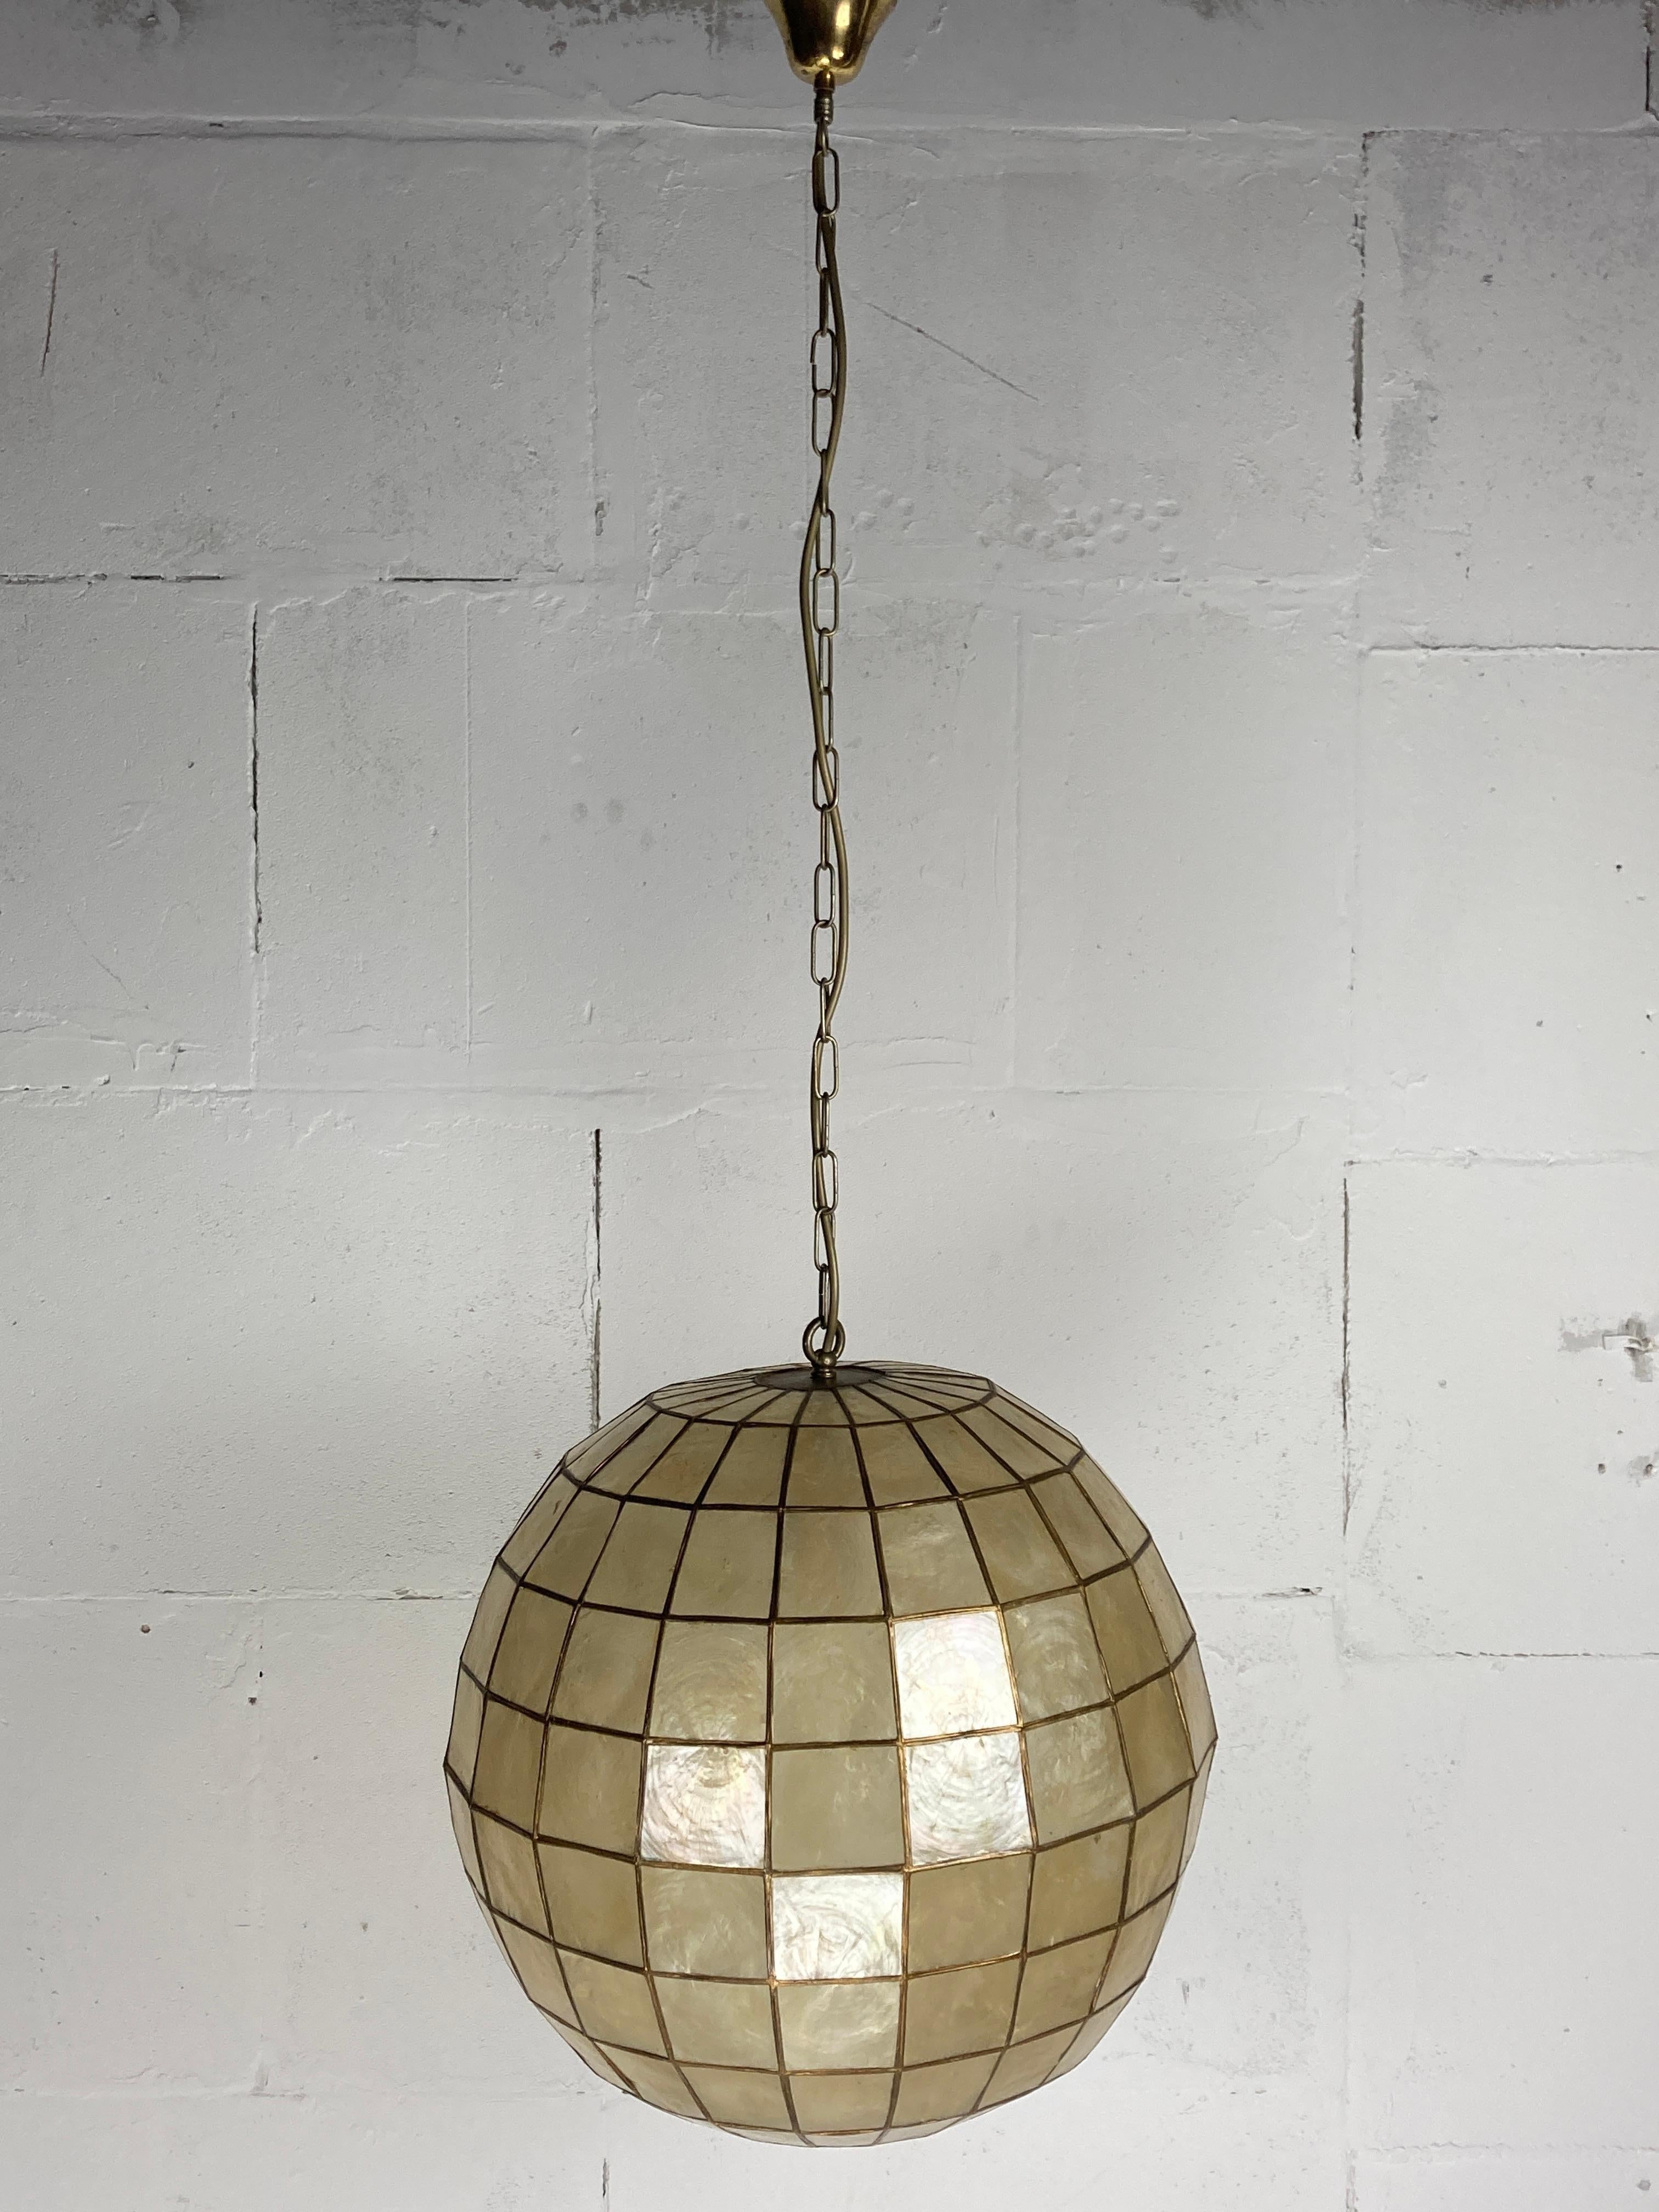 Rare et exceptionnel lustre à boules en coquillage capiz de la Feldman Lighting Company Los Angeles (années 1960). Cette lampe a été fabriquée dans leur Studio aux Philippines et est en très bon état compte tenu de son âge. Les coquilles de cadix